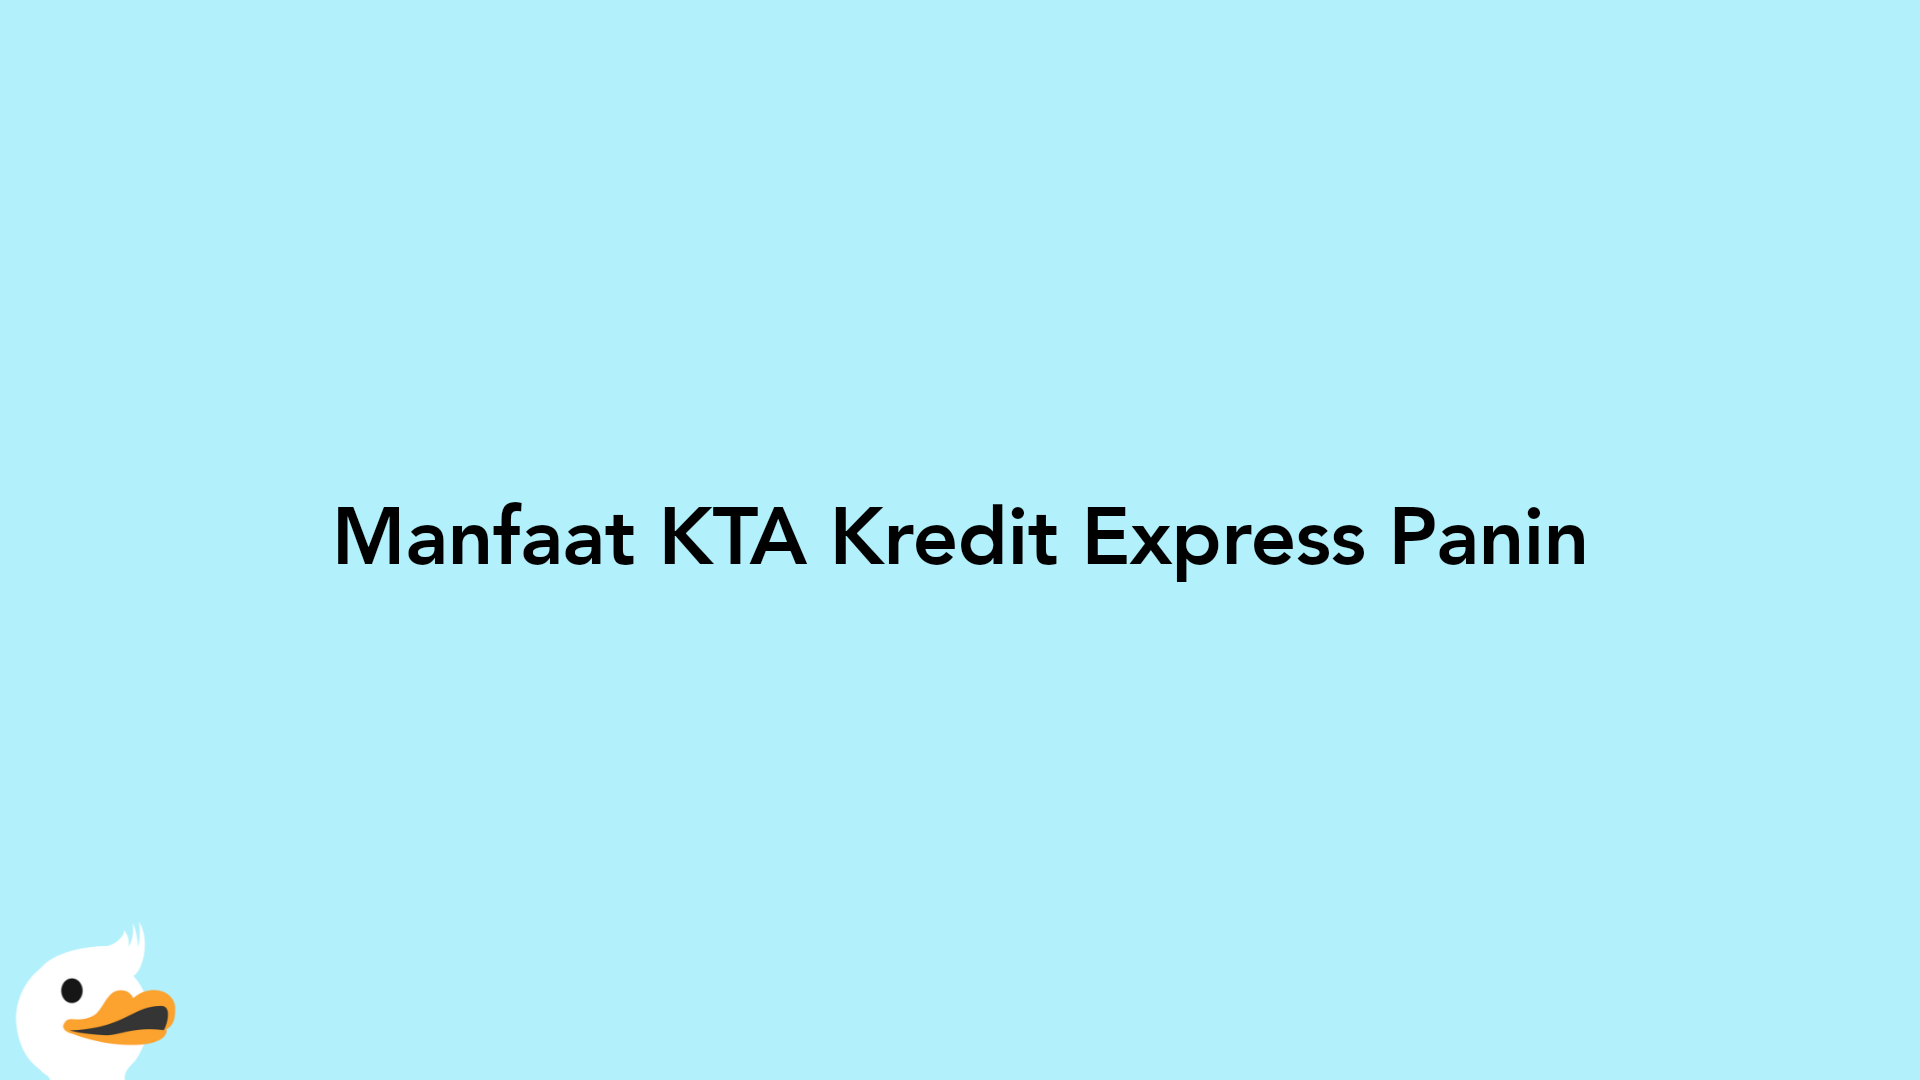 Manfaat KTA Kredit Express Panin